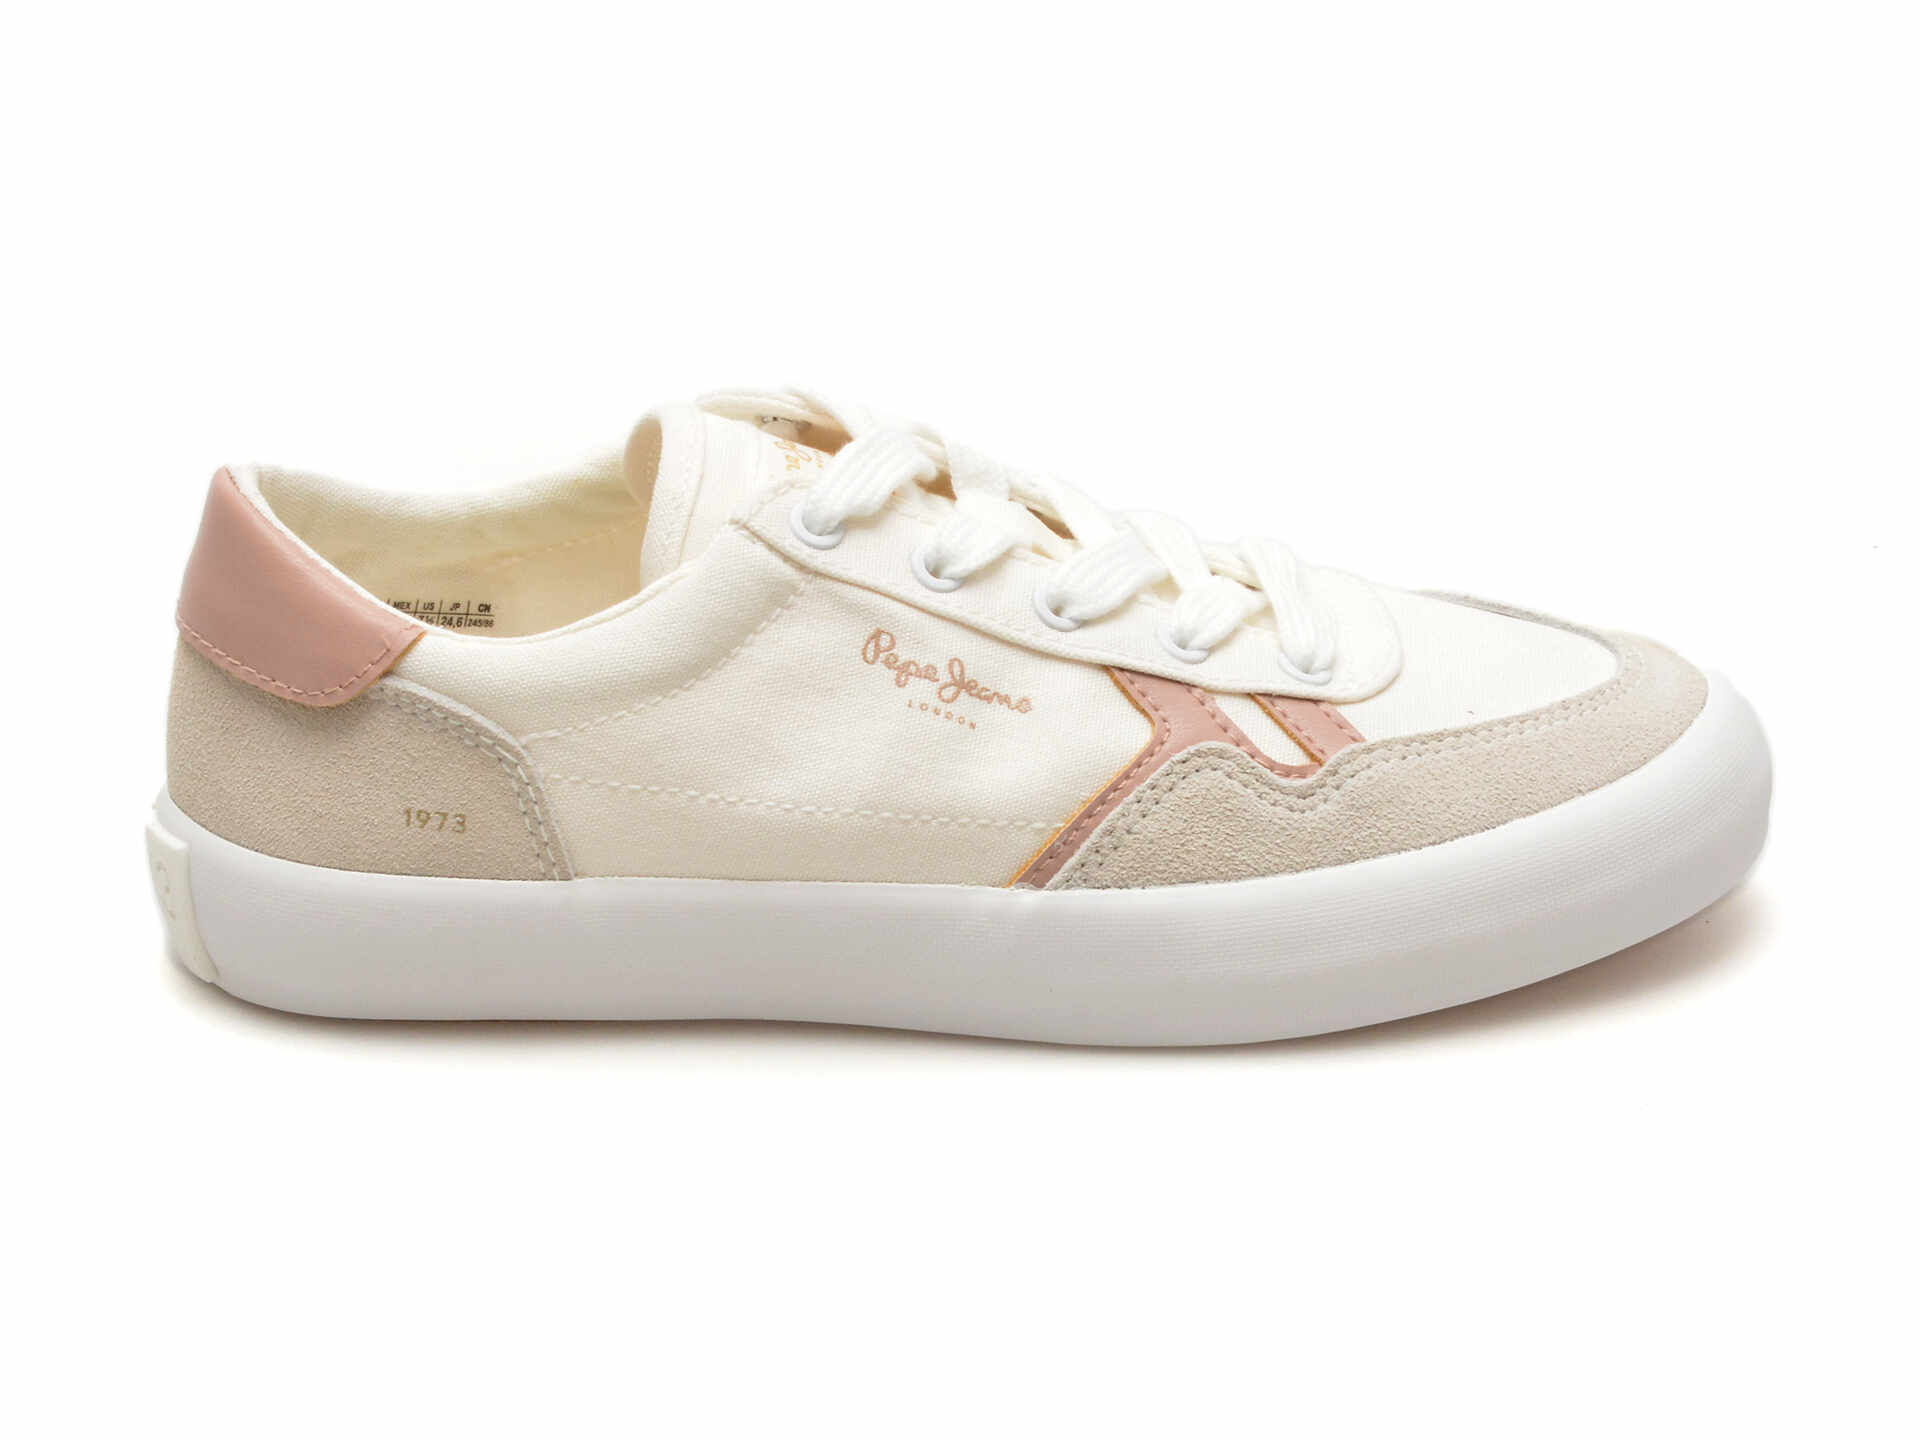 Pantofi PEPE JEANS albi, TRAVIS BRIT, din material textil